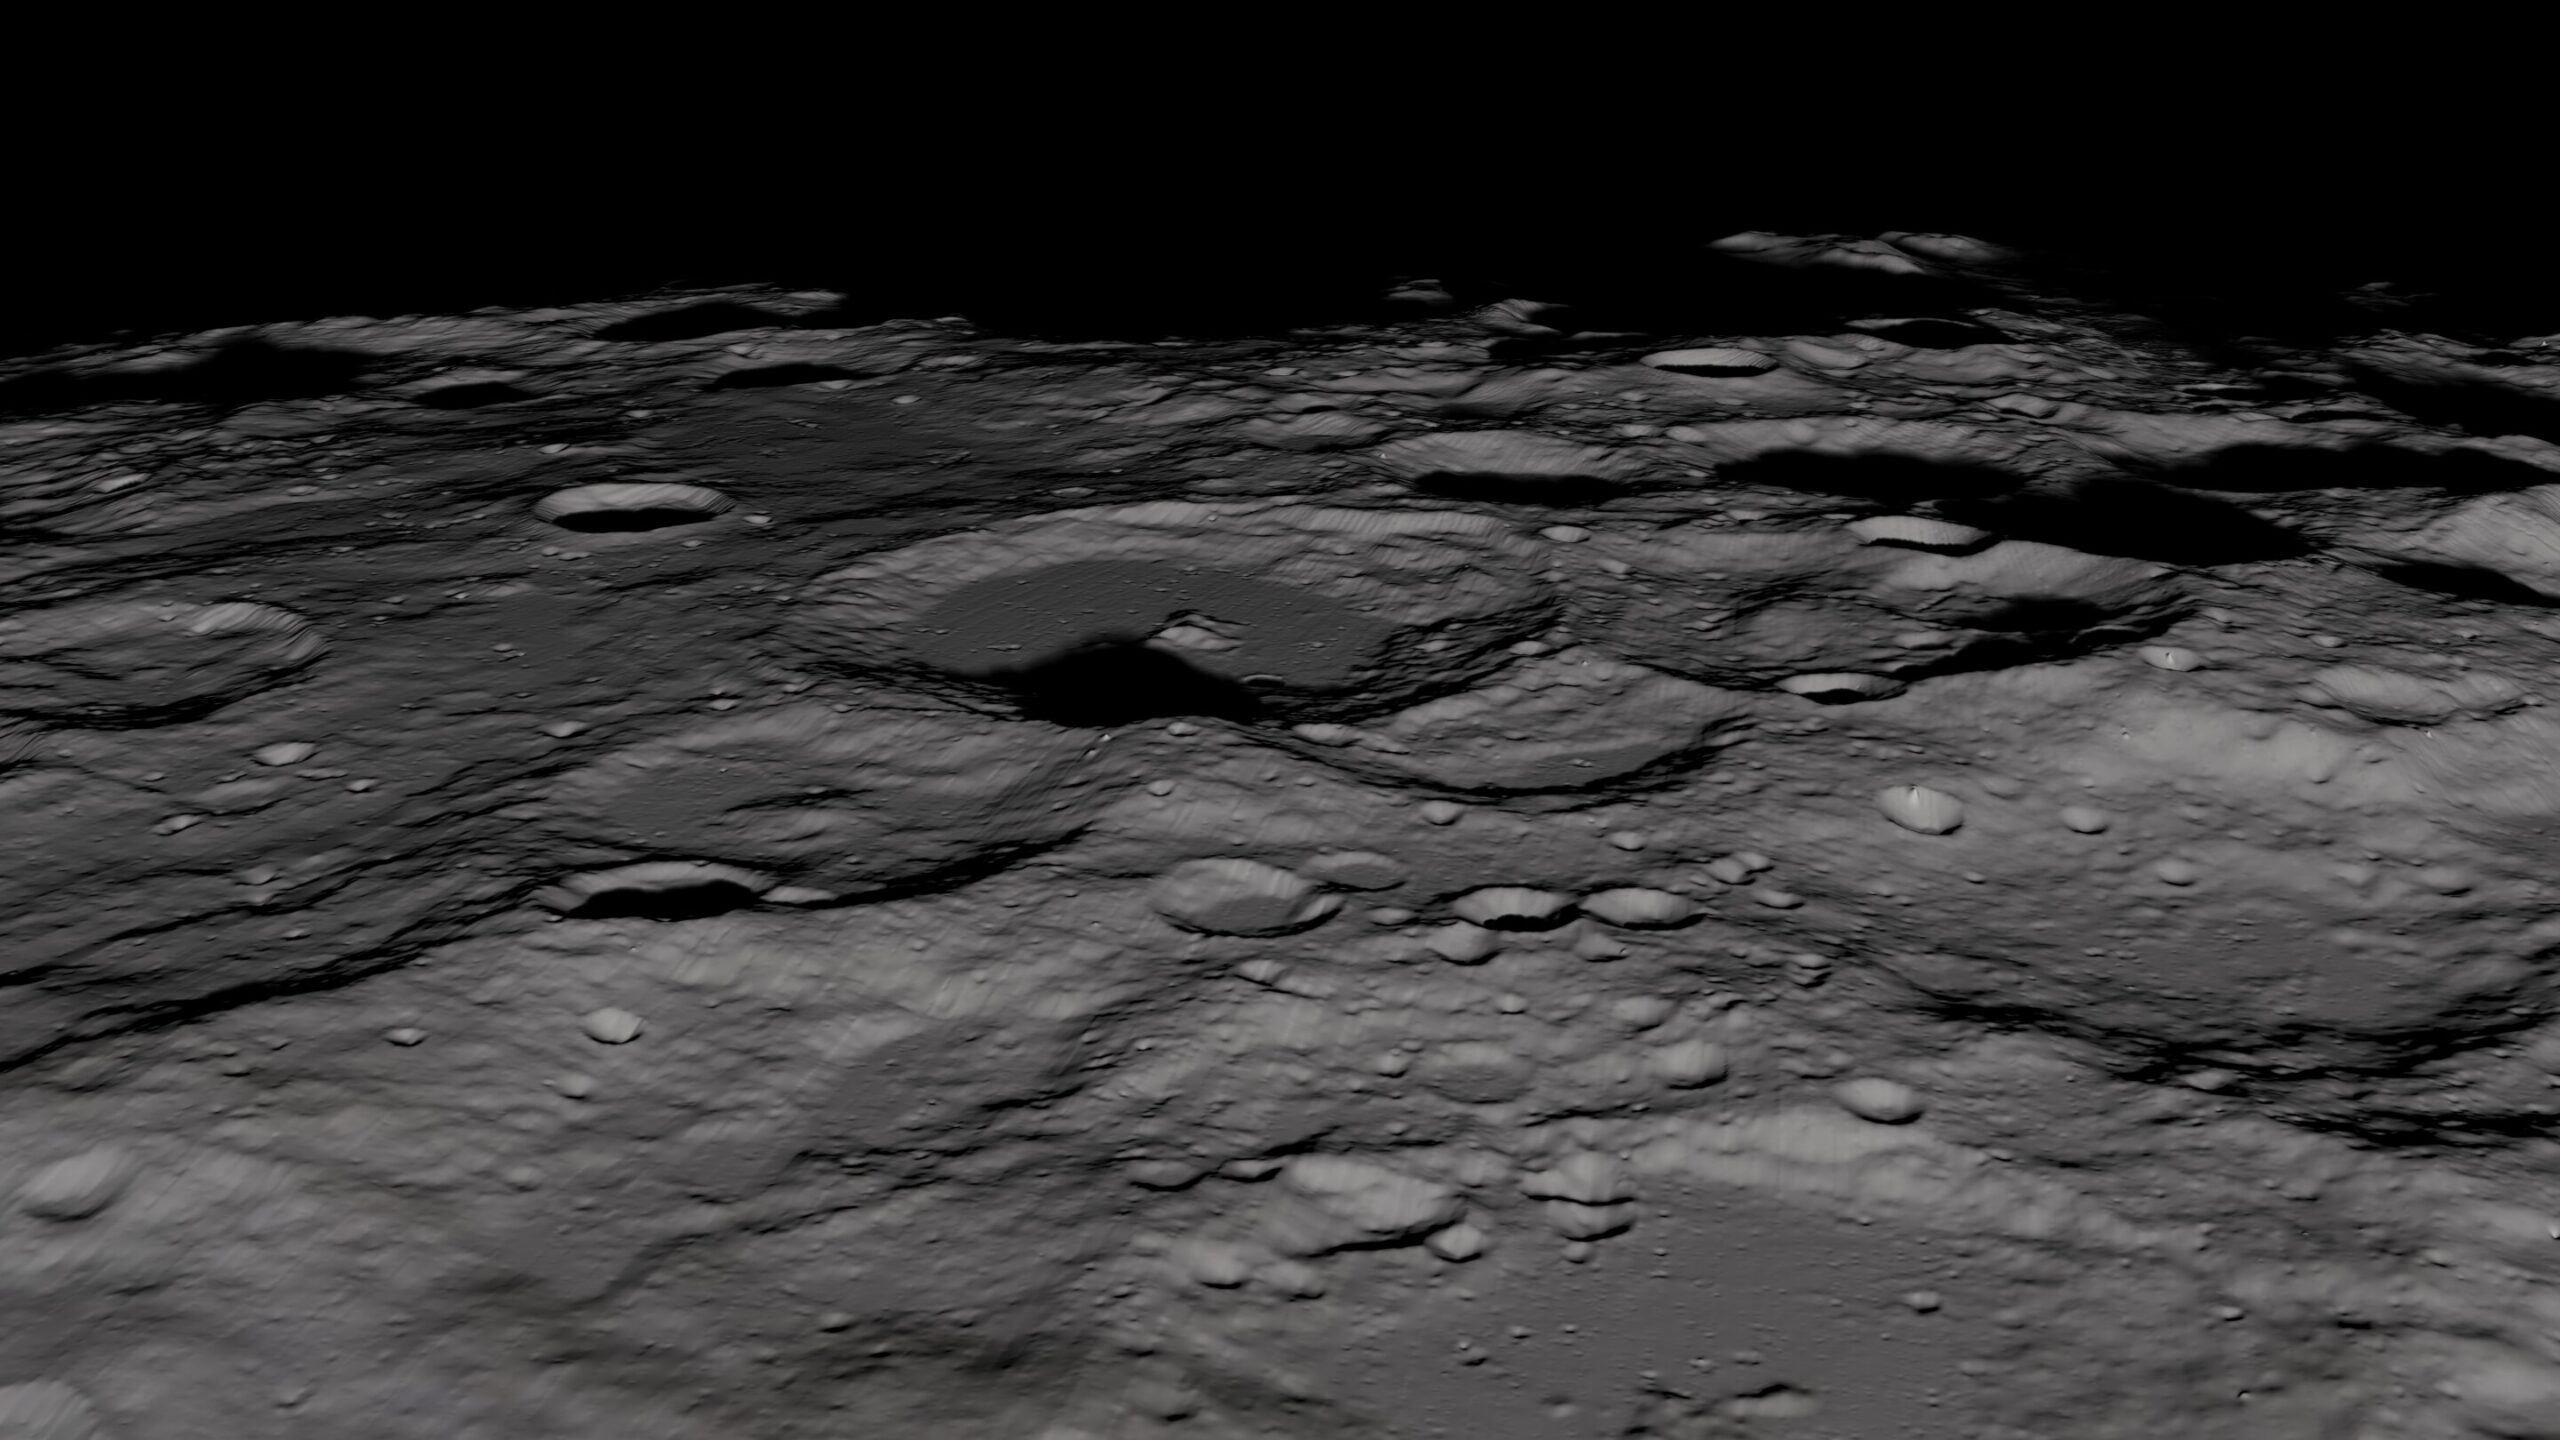 Astronauts Practice Identifying Landmarks on the Moon’s Surface